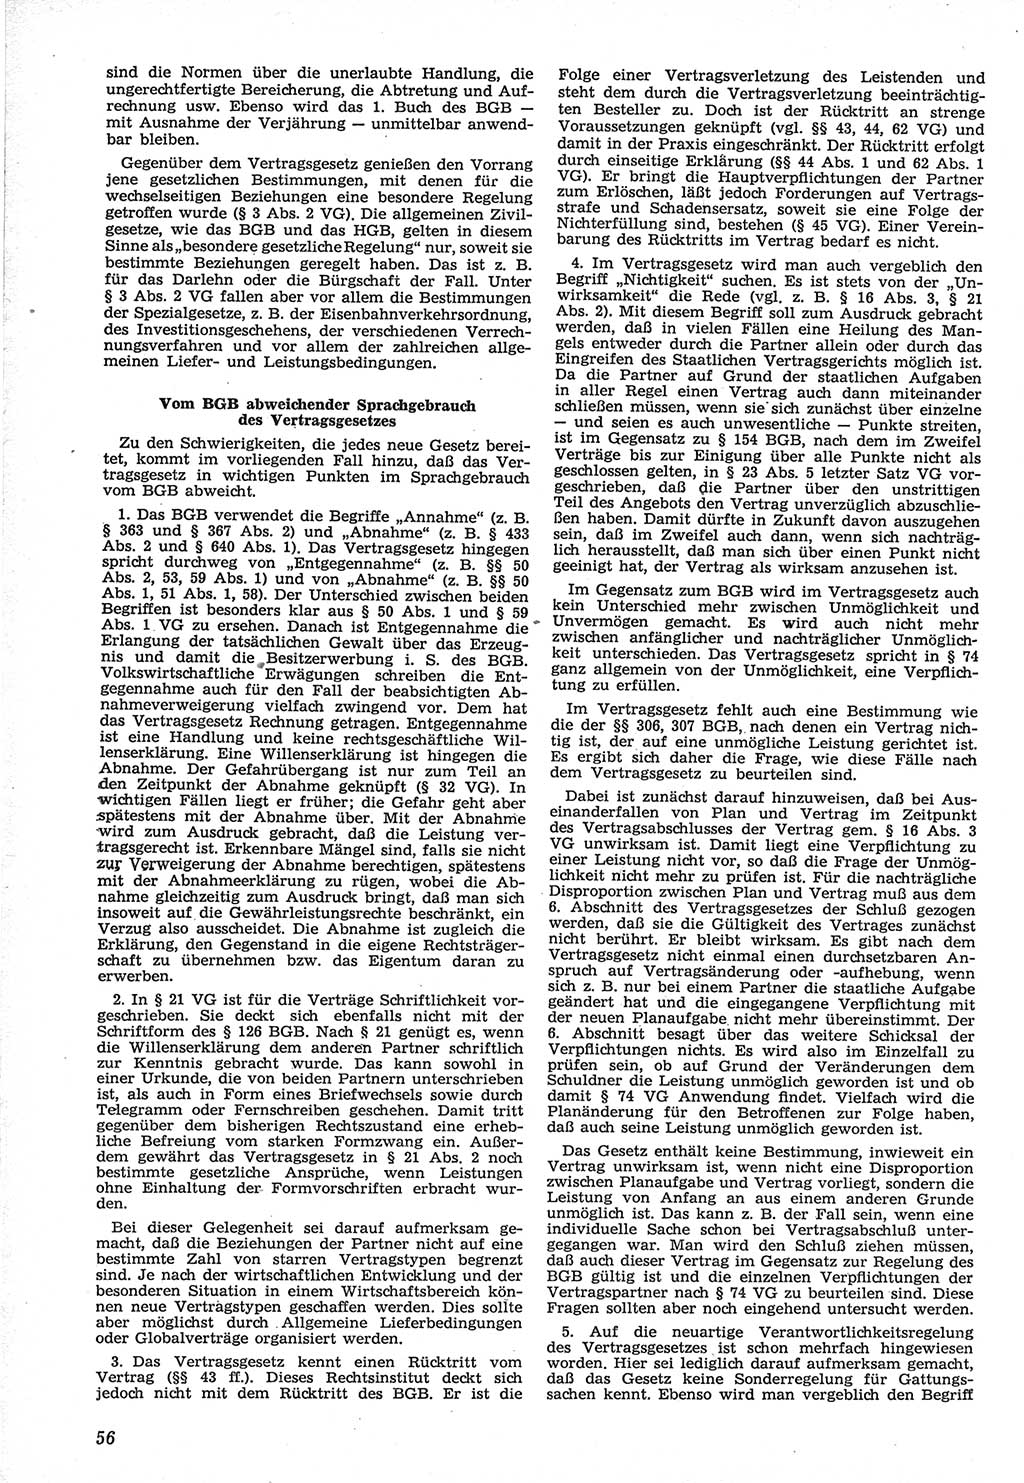 Neue Justiz (NJ), Zeitschrift für Recht und Rechtswissenschaft [Deutsche Demokratische Republik (DDR)], 12. Jahrgang 1958, Seite 56 (NJ DDR 1958, S. 56)